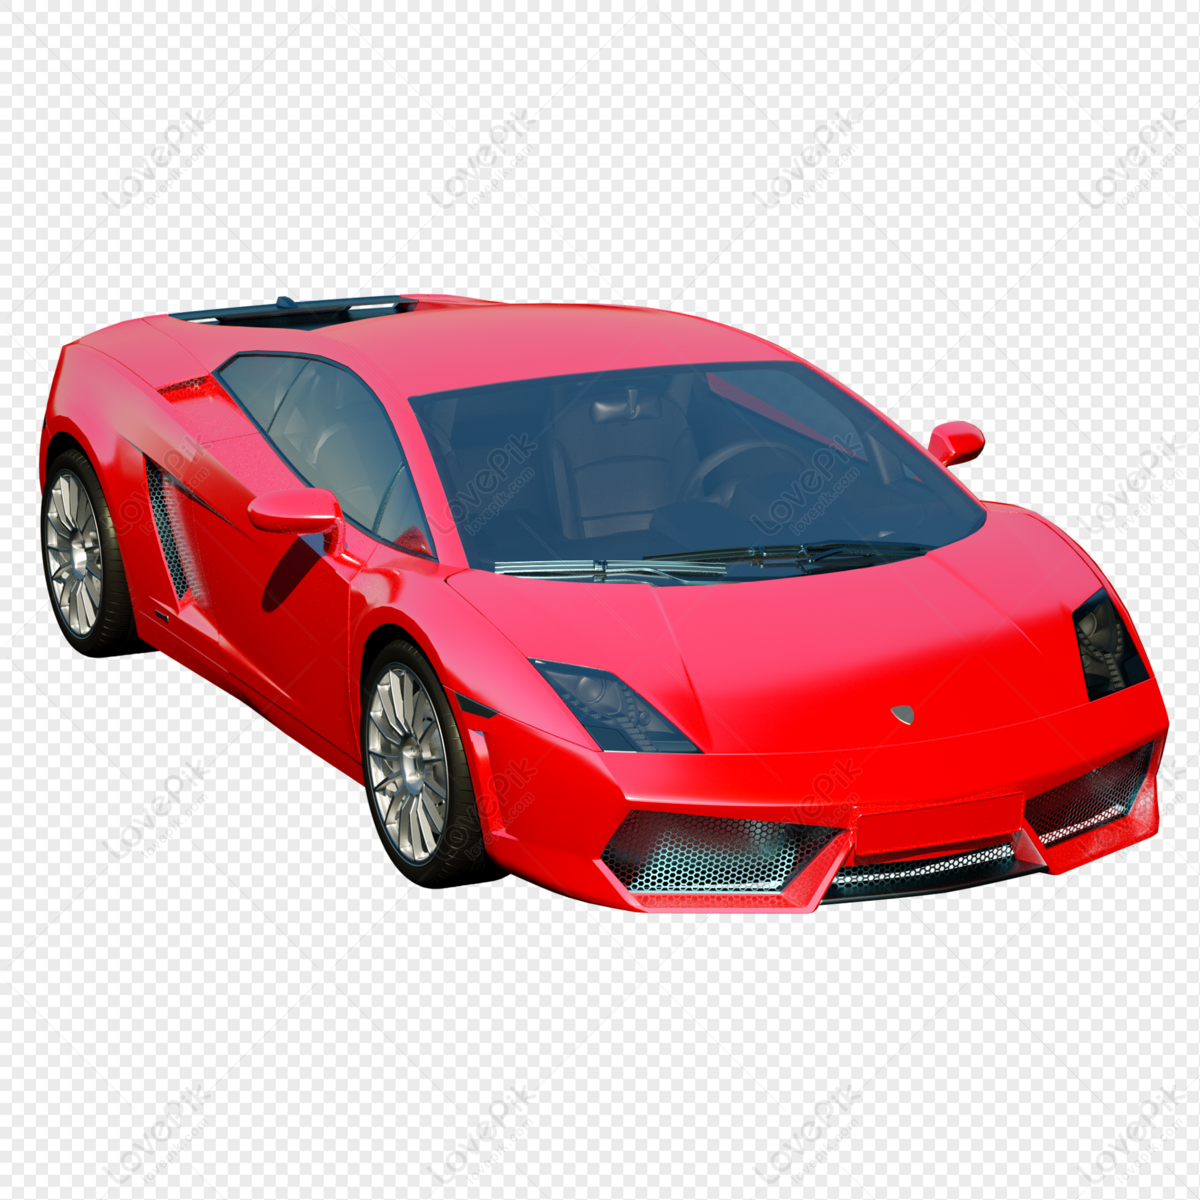 Nhìn vào mô hình xe 3D đỏ này, bạn sẽ cảm nhận được sự hoàn hảo và độ sắc nét của chi tiết. Màu sắc đỏ rực rỡ thể hiện sự nổi bật và cá tính, đúng là một lựa chọn tuyệt vời để trang trí cho phòng khách hay văn phòng làm việc của bạn. Hãy xem ảnh ngay!